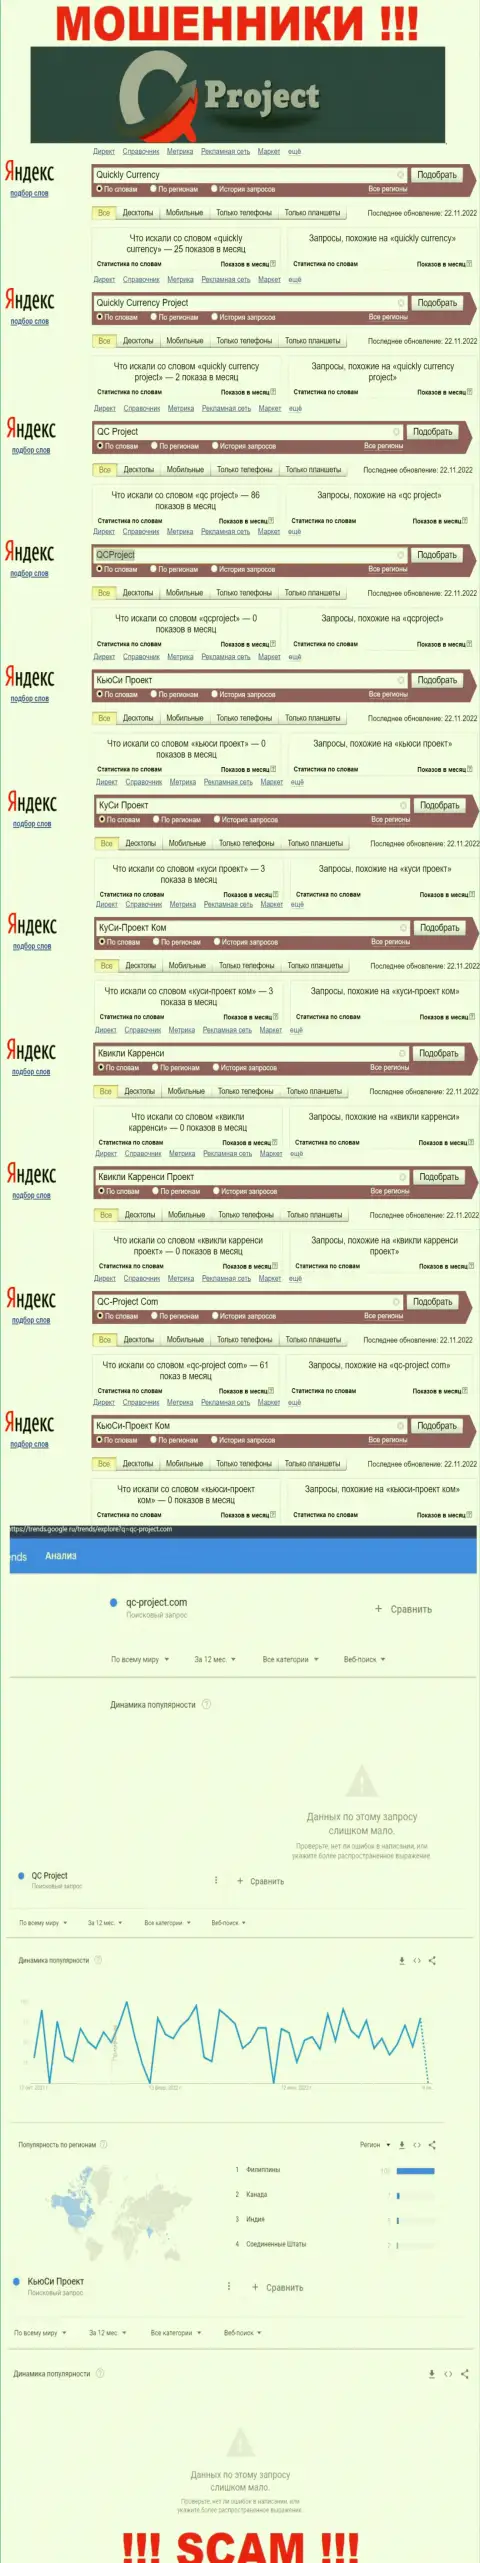 Какое количество брендовых запросов в поисковиках глобальной сети интернет имеется по компании QuicklyCurrency